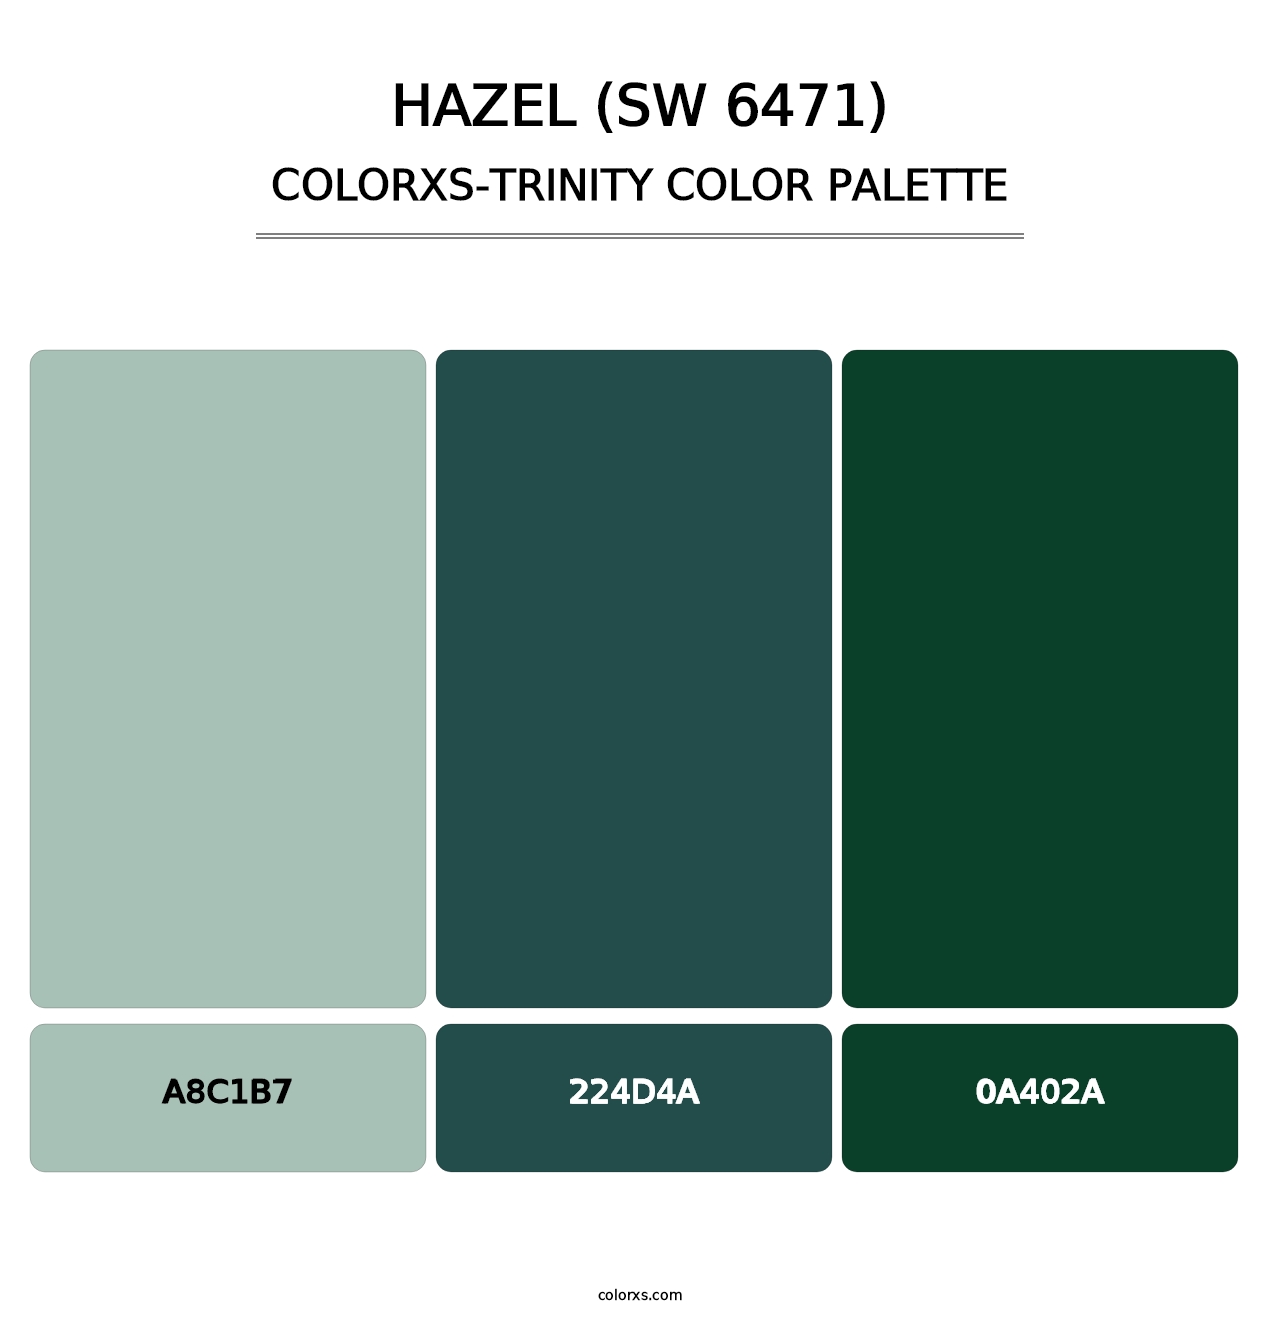 Hazel (SW 6471) - Colorxs Trinity Palette